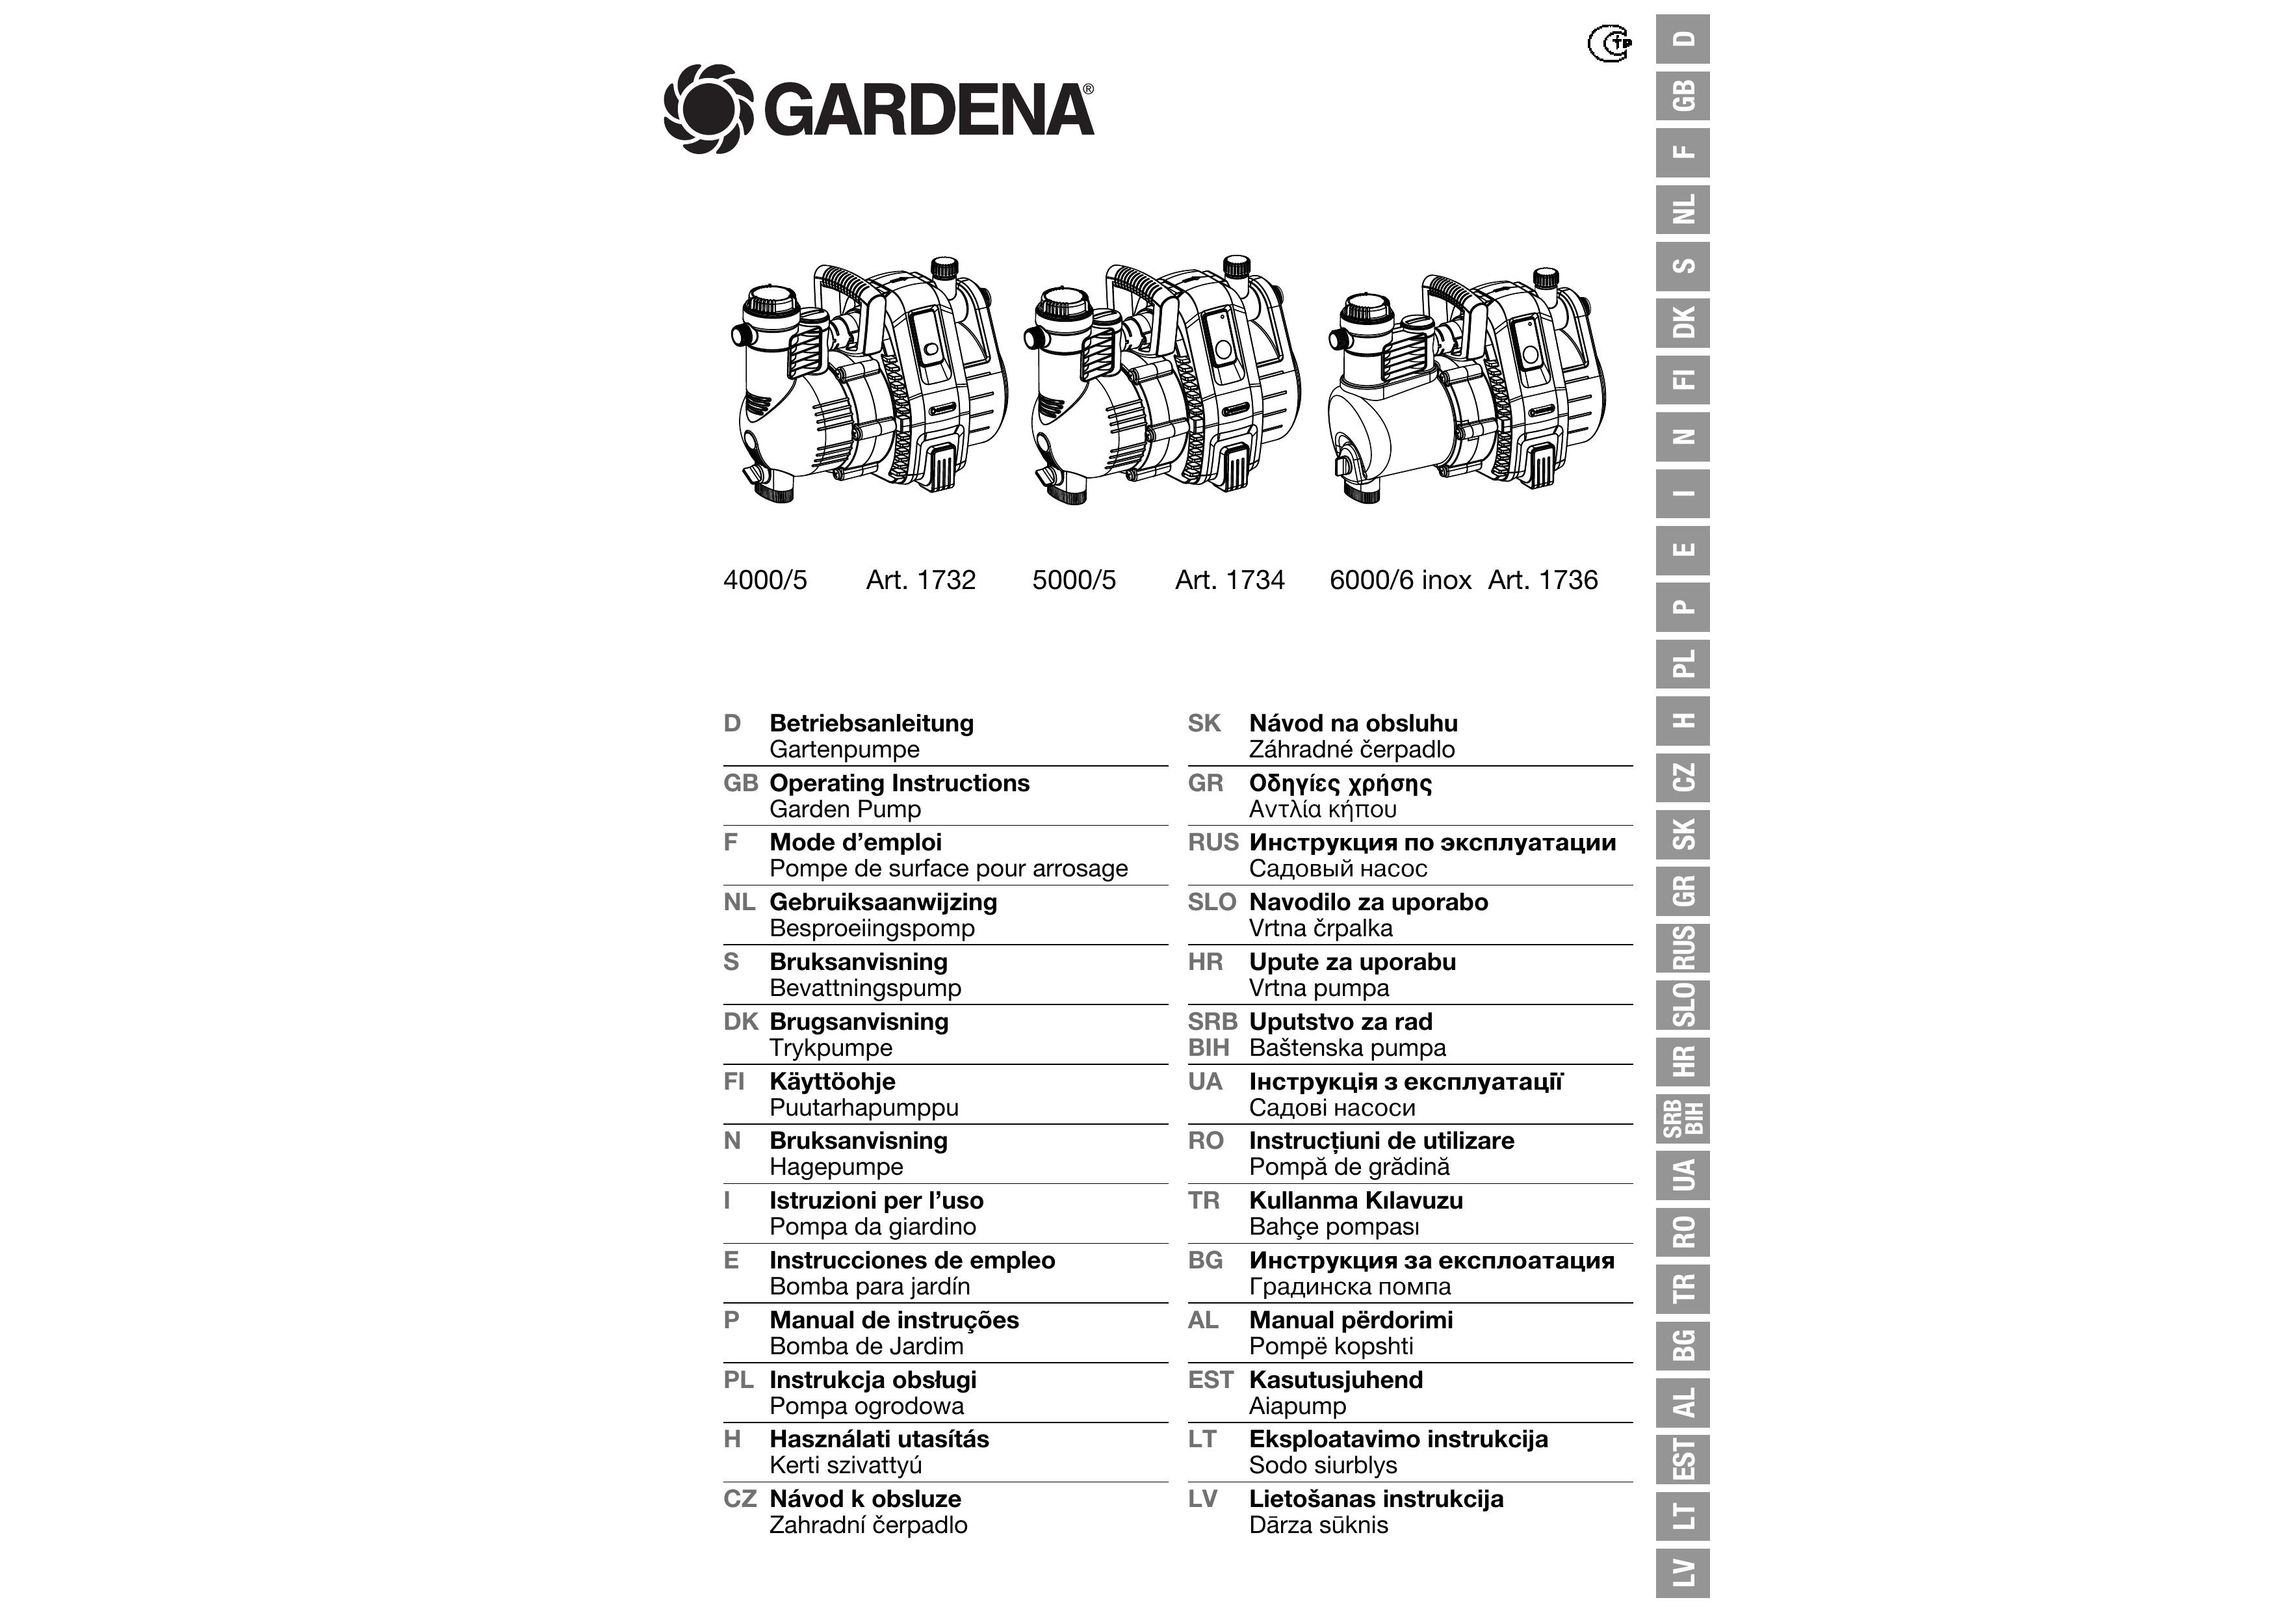 Gardena 4000/5 Water Pump User Manual